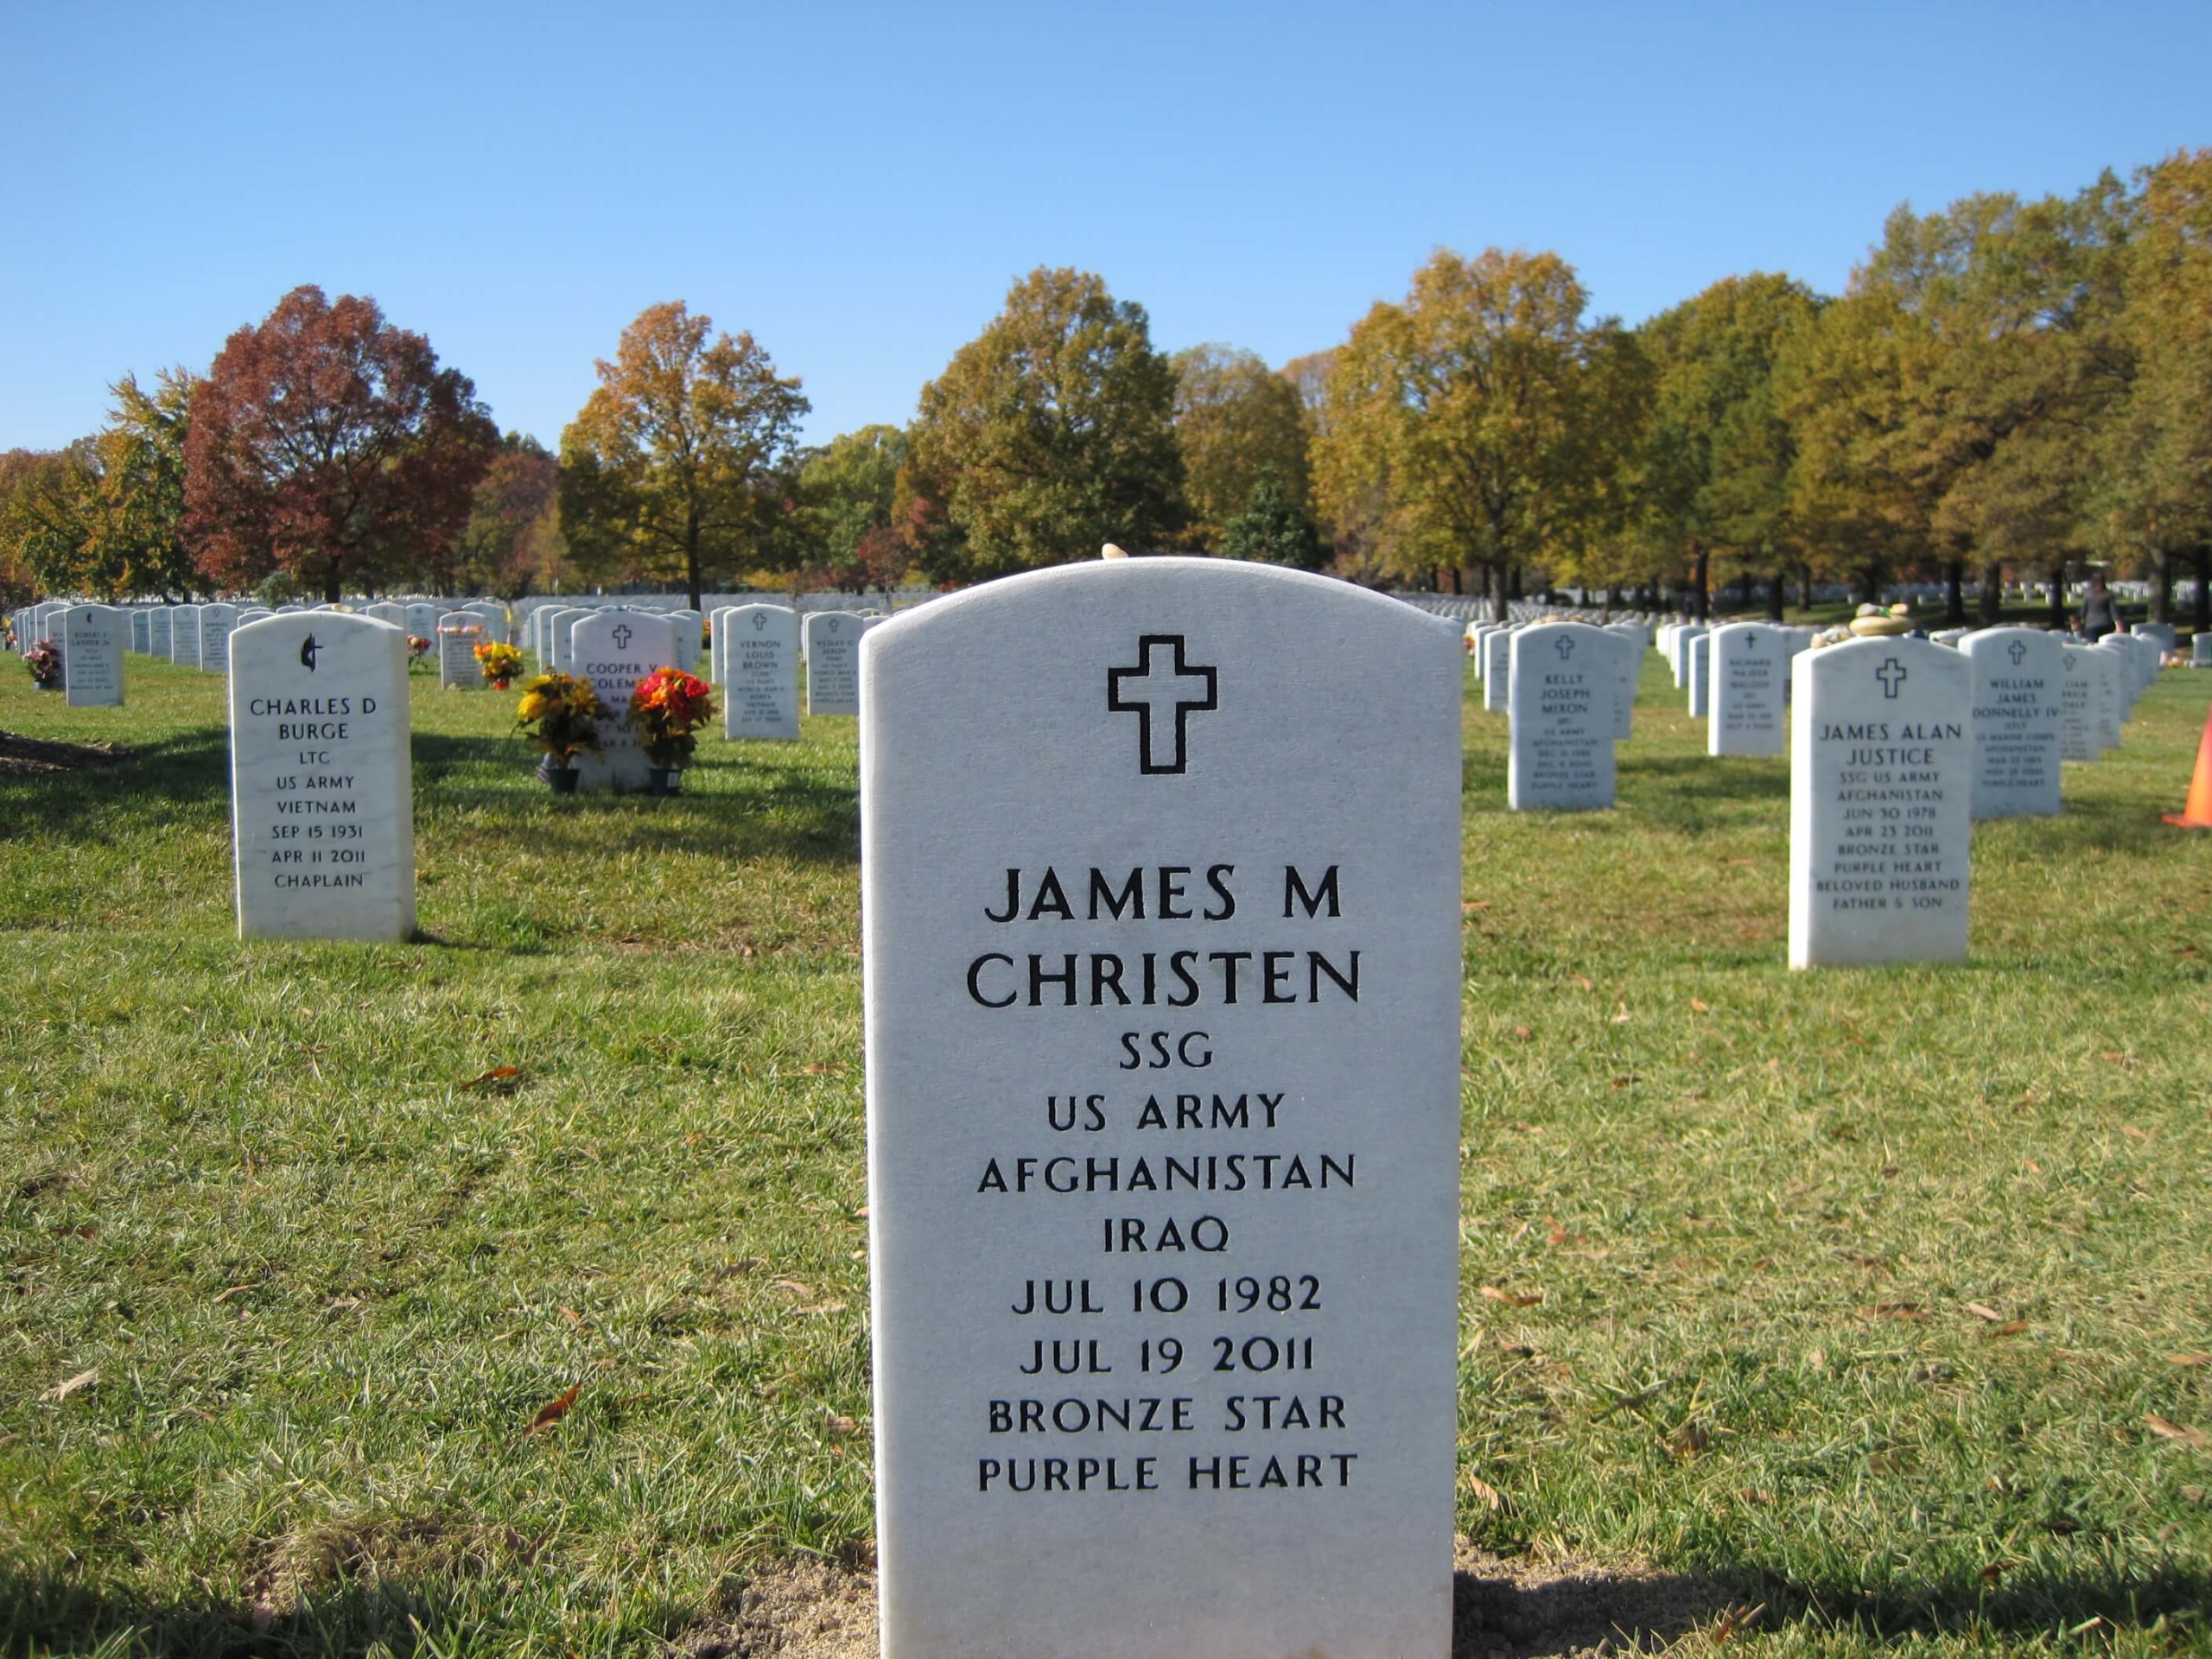 jmchristen-gravesite-photo-by-eileen-horan-november-2011-003